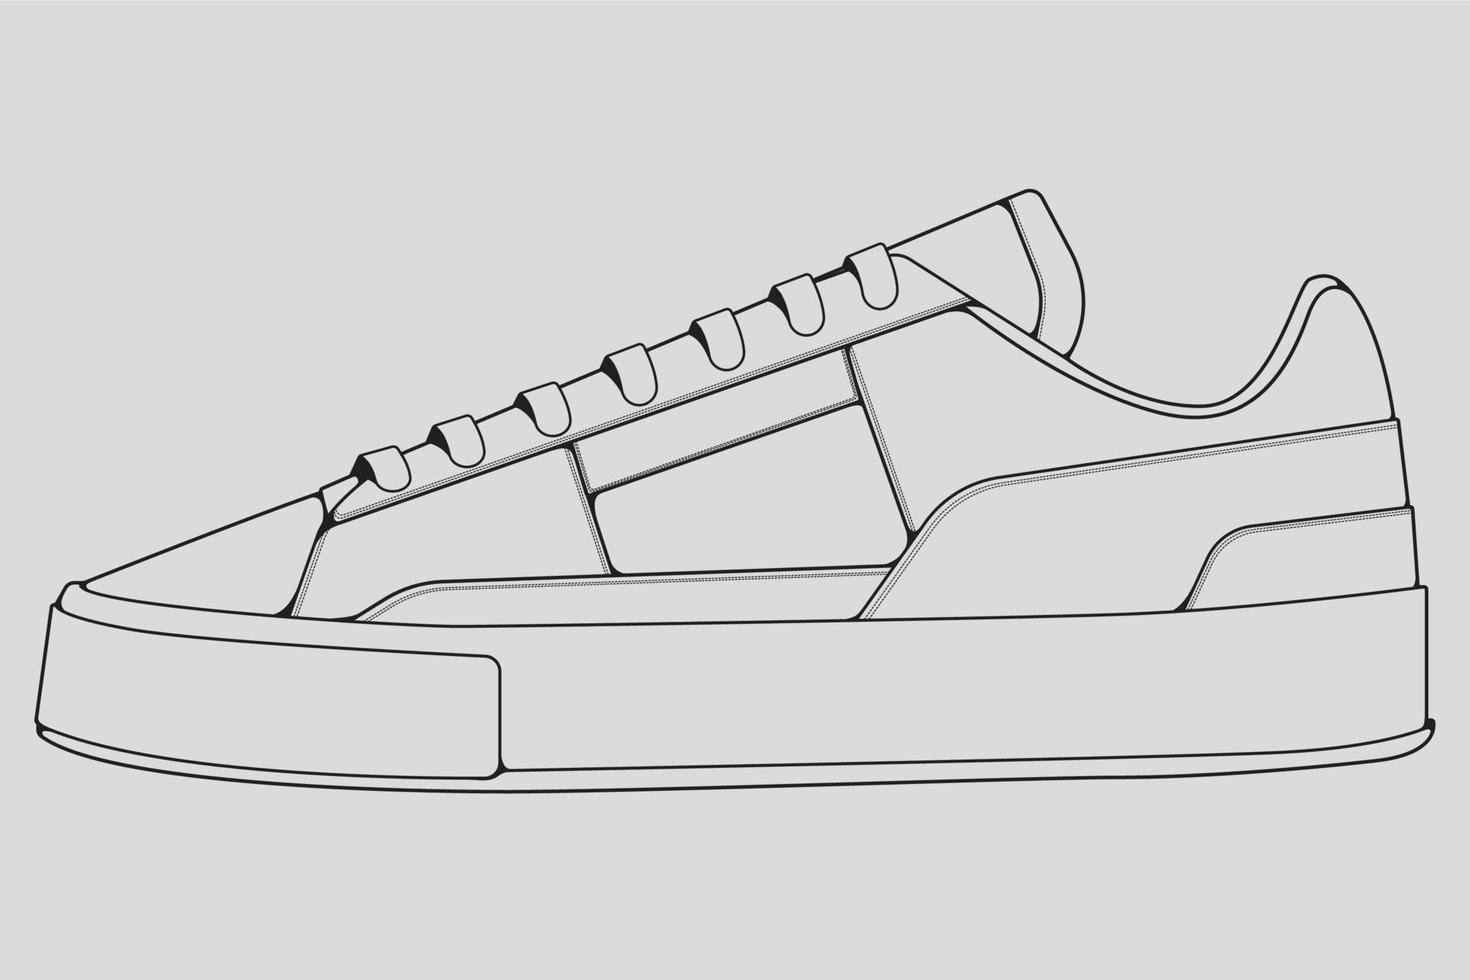 vetor de desenho de contorno de tênis de sapatos, tênis desenhado em um estilo de desenho, contorno de modelo de treinadores de tênis de linha preta, ilustração vetorial.